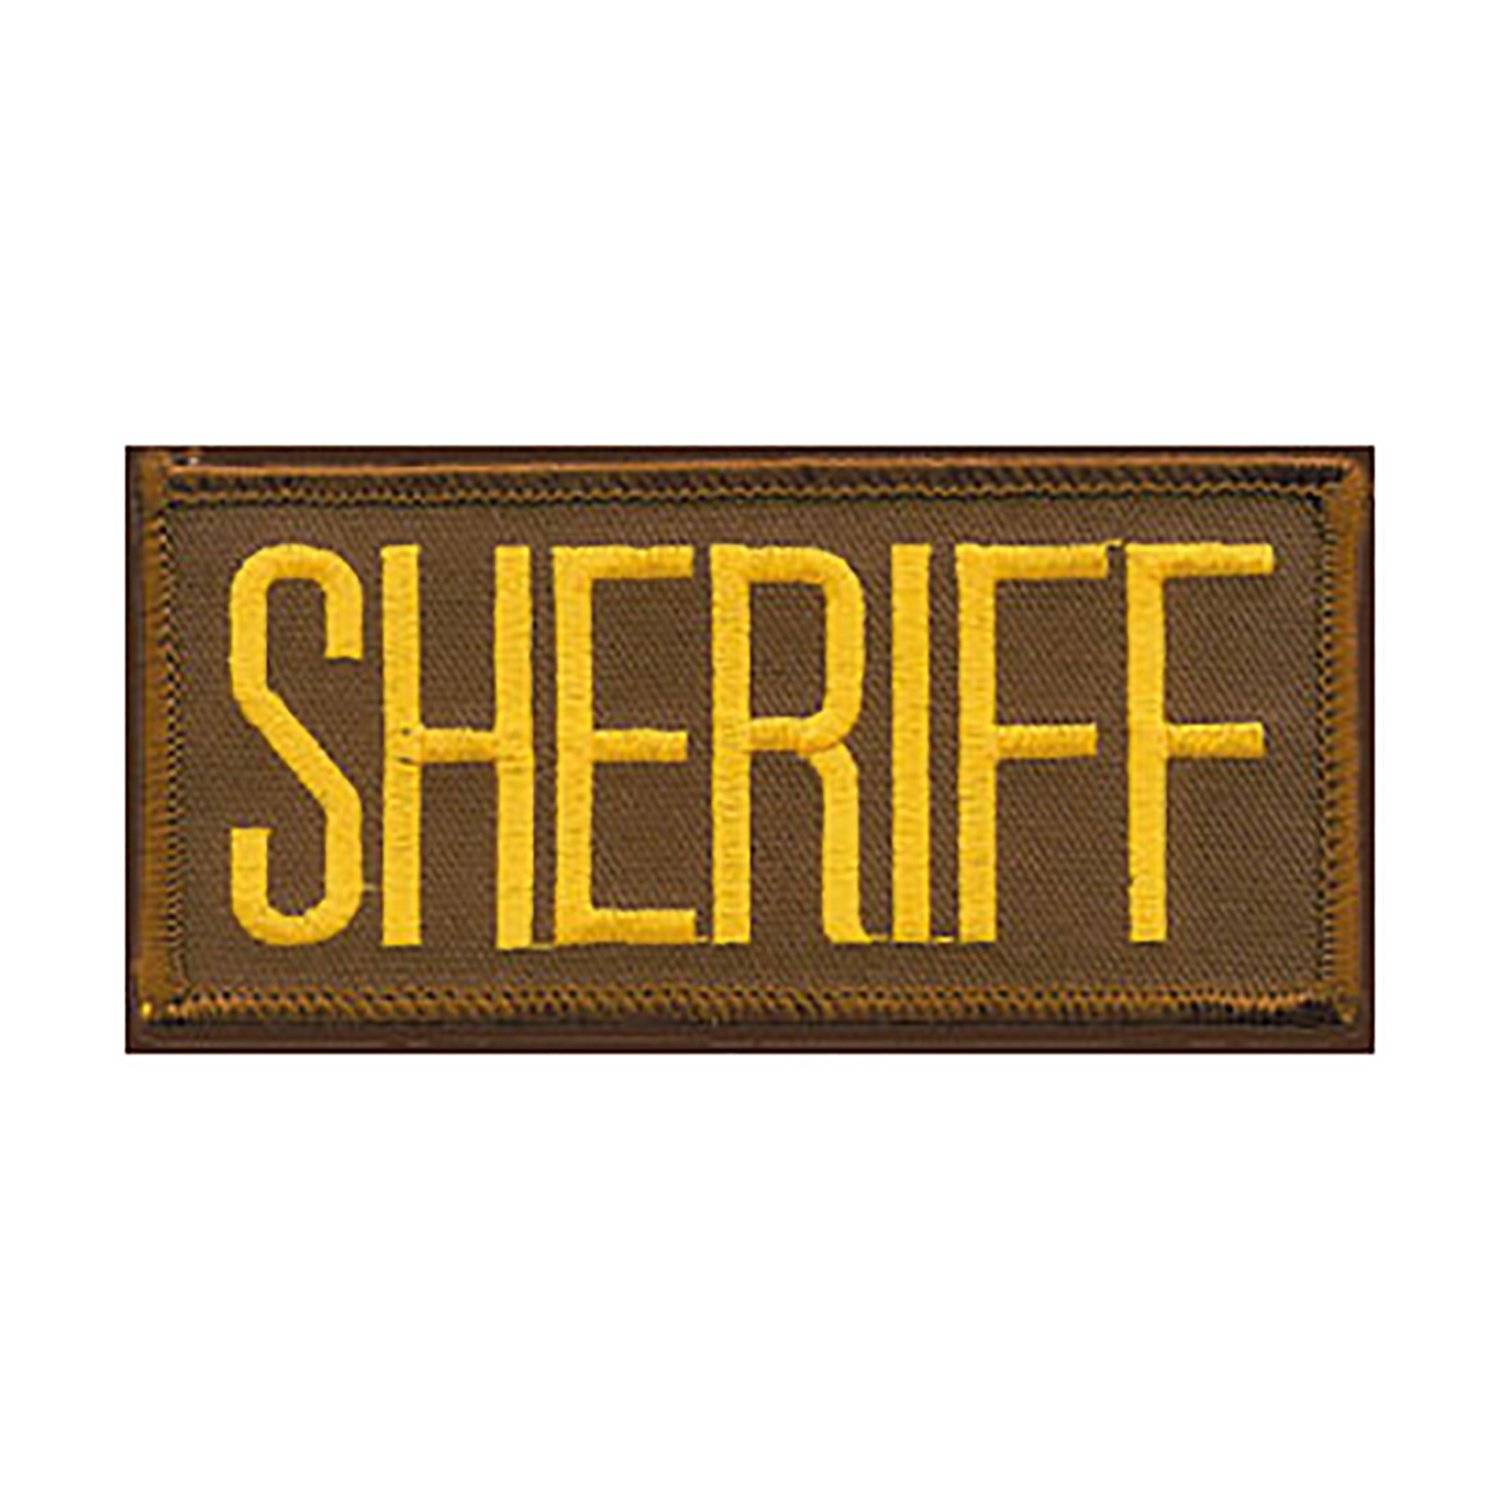 SHERIFF Vest Patch